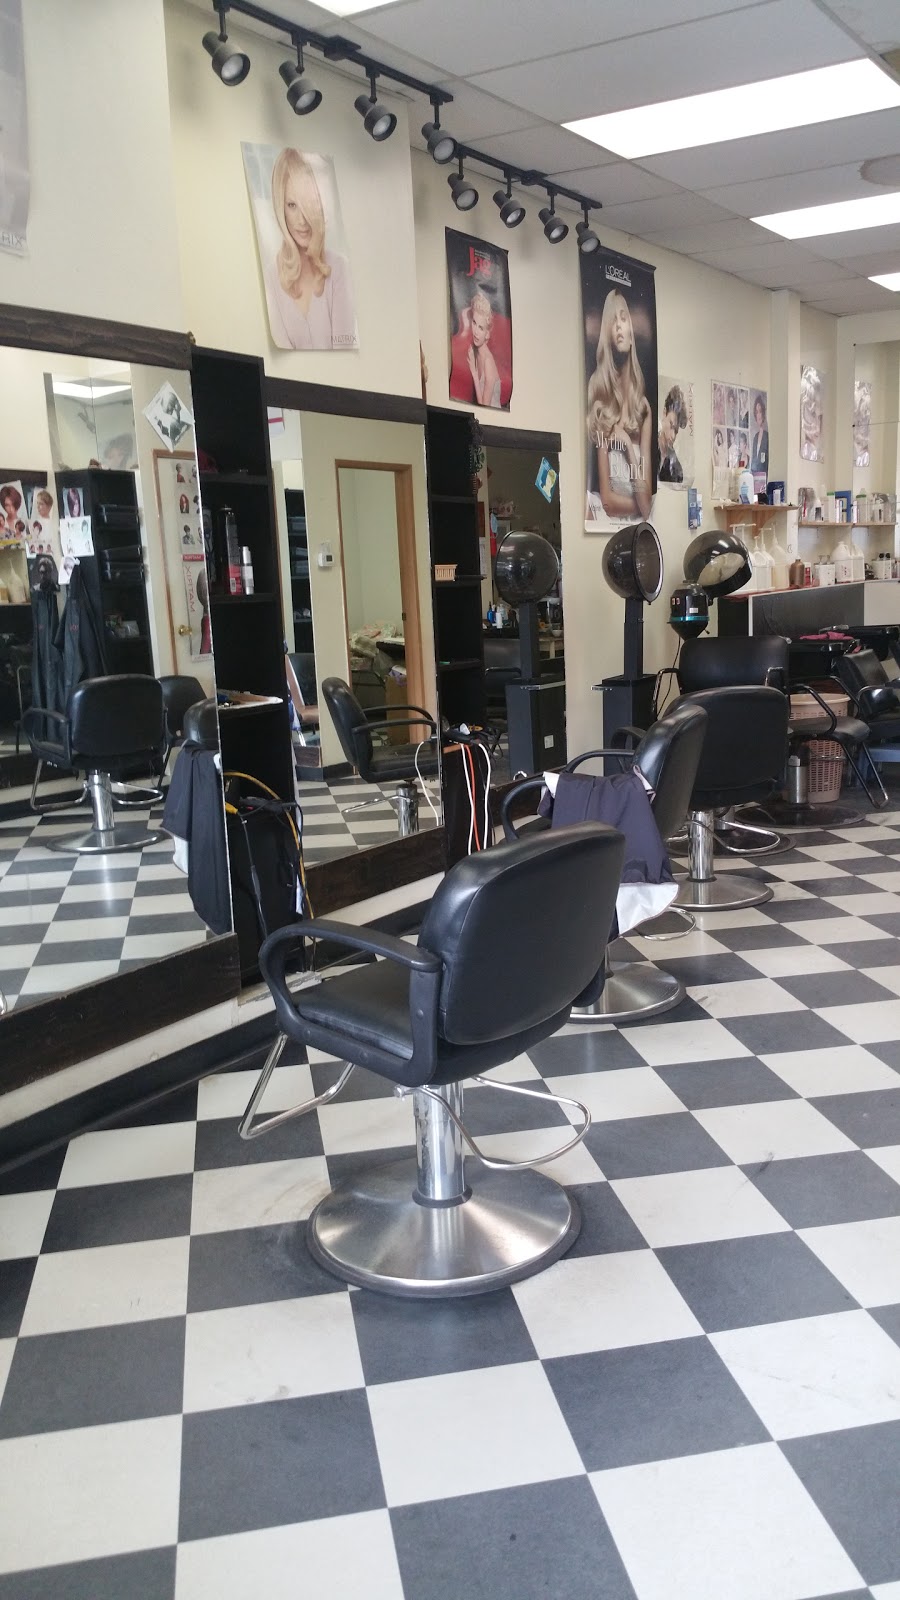 Minas Hair & Beauty Salon | hair care | 10565 98 St NW, Edmonton, AB T5H 2N5, Canada | 7804217898 OR +1 780-421-7898